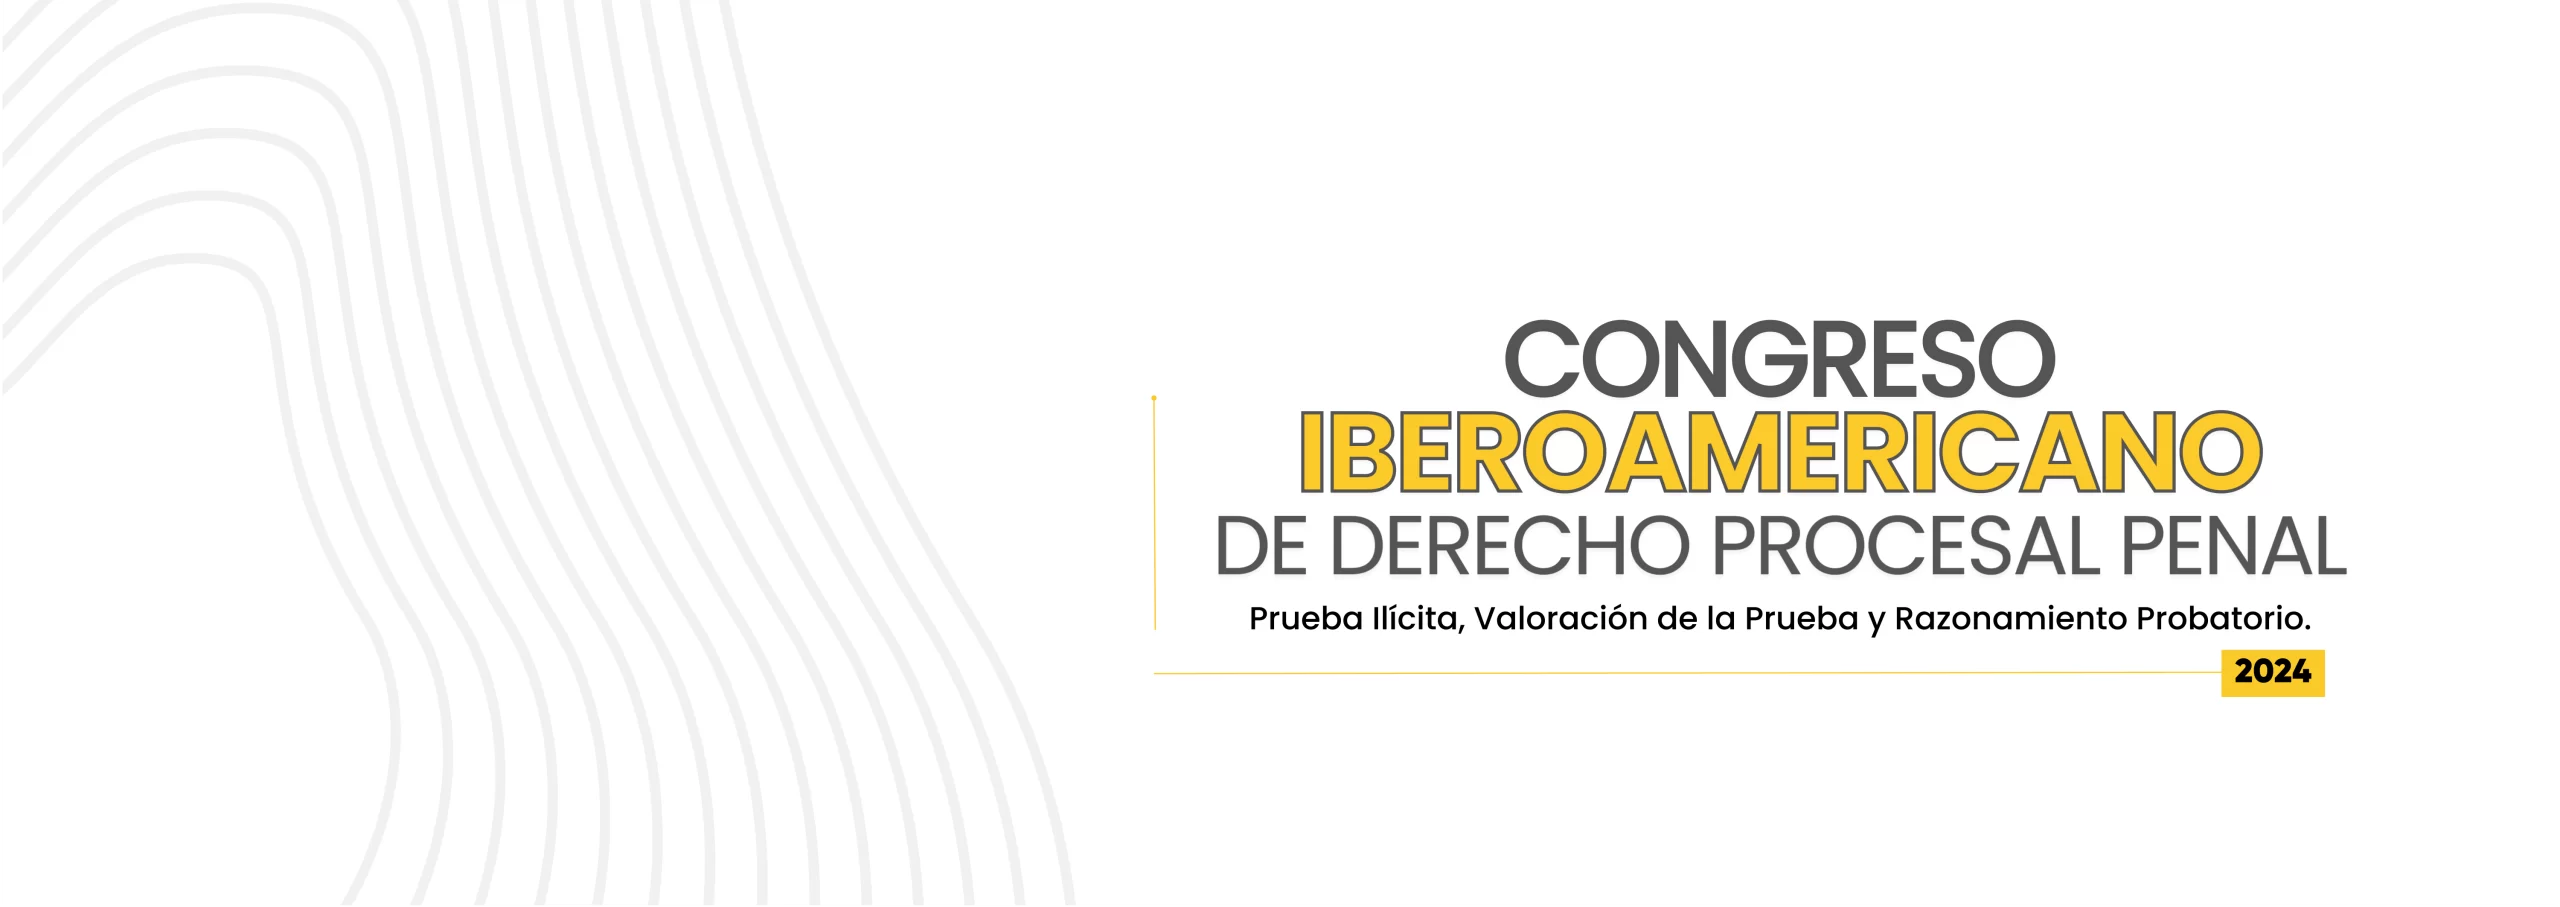 Congreso Iberoamericano de derecho